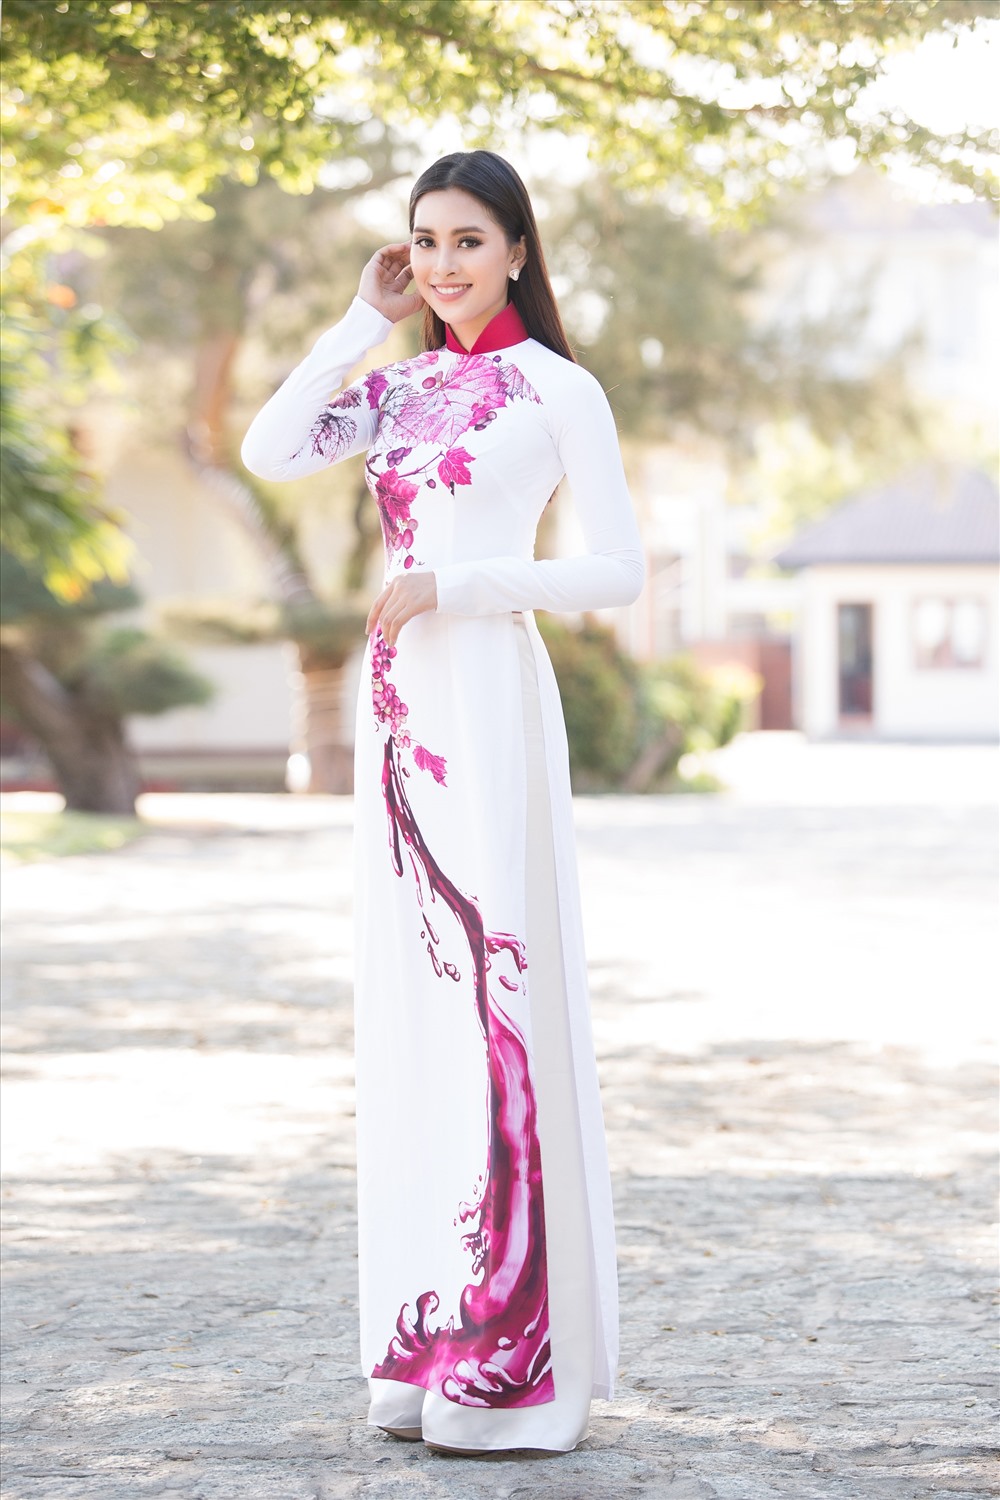 Hoa hậu Tiểu Vy được chọn làm đại sứ cho Lễ hội Vang và Nho Ninh Thuận 2019